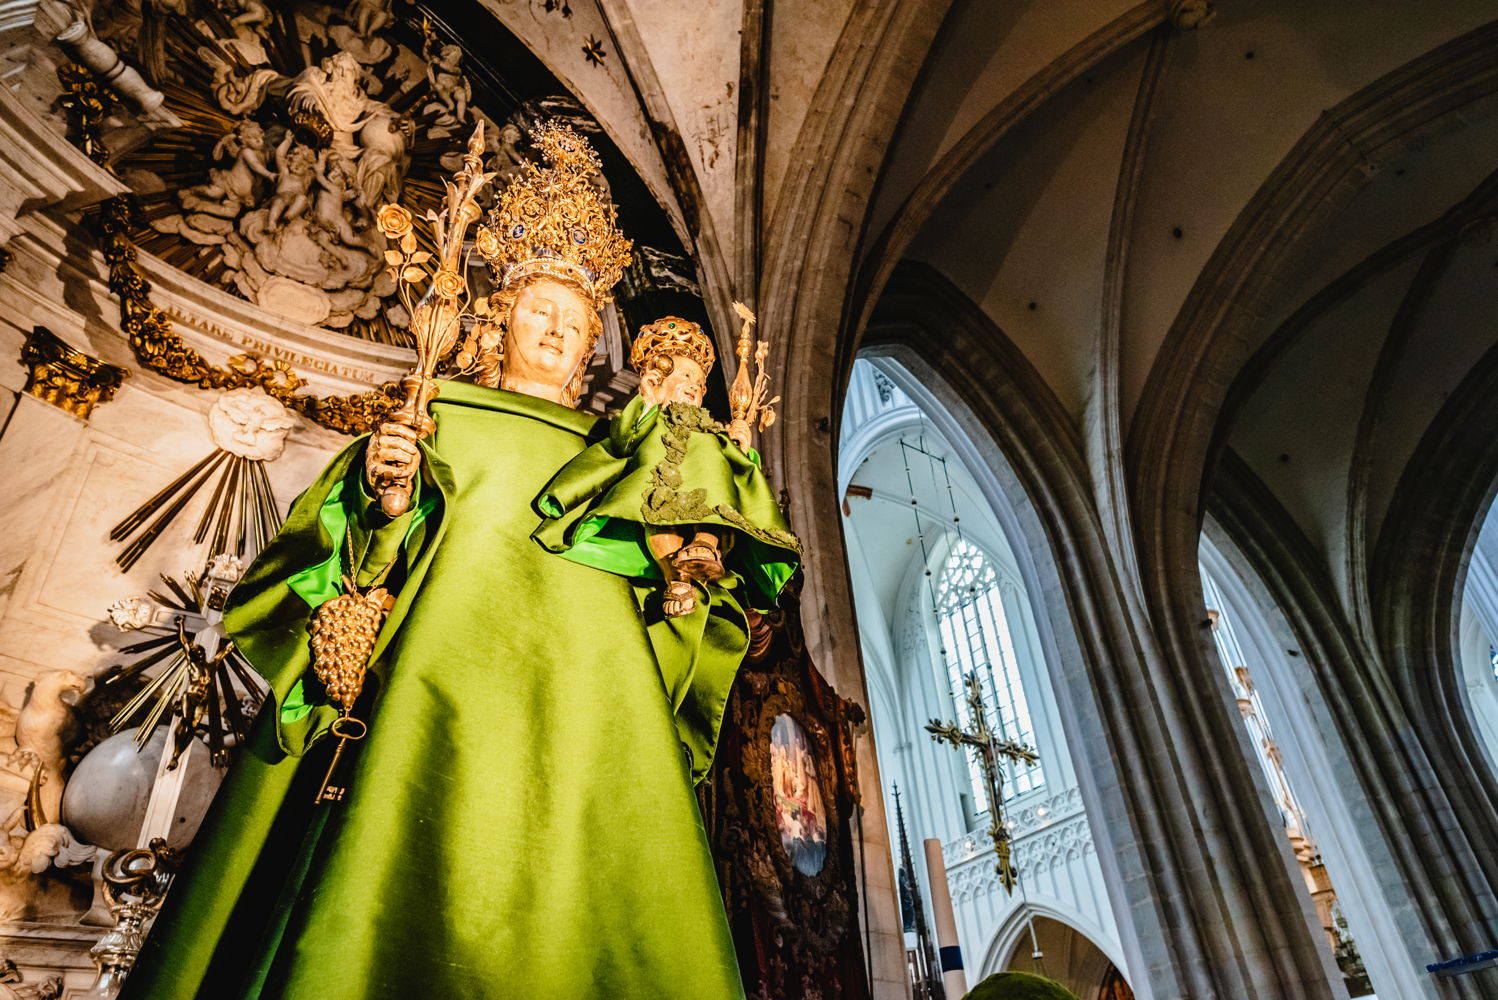 Mariabeeld van de Onze-Lieve-Vrouwekathedraal Antwerpen in een creatie van couturier Edouard Vermeulen van Natan, (c) MoMu Antwerp, Foto: Matthias De Boeck